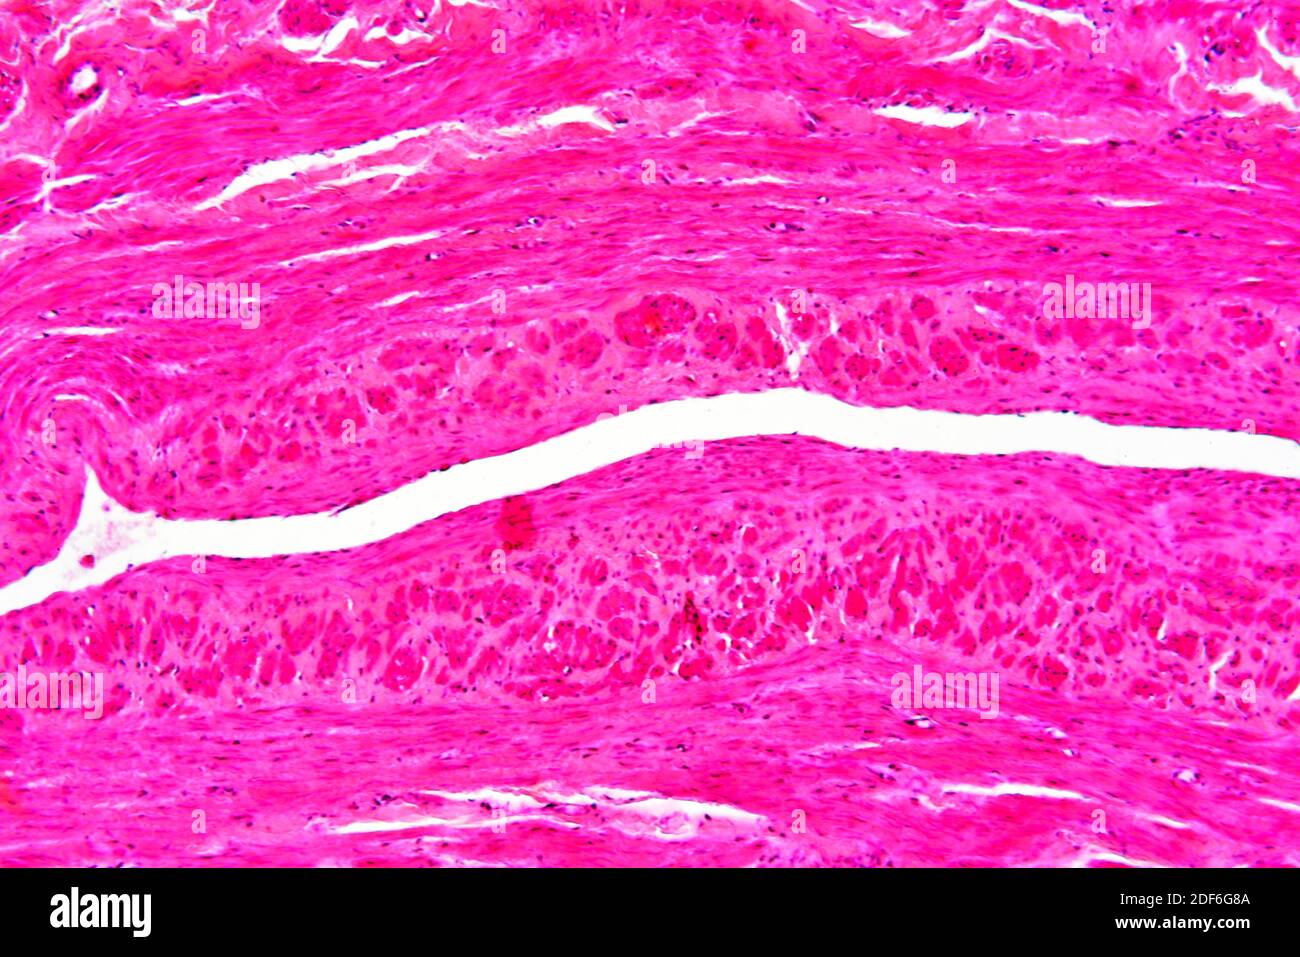 Arteria coronaria humana con arteriosclerosis. Microscopio óptico X100. Foto de stock